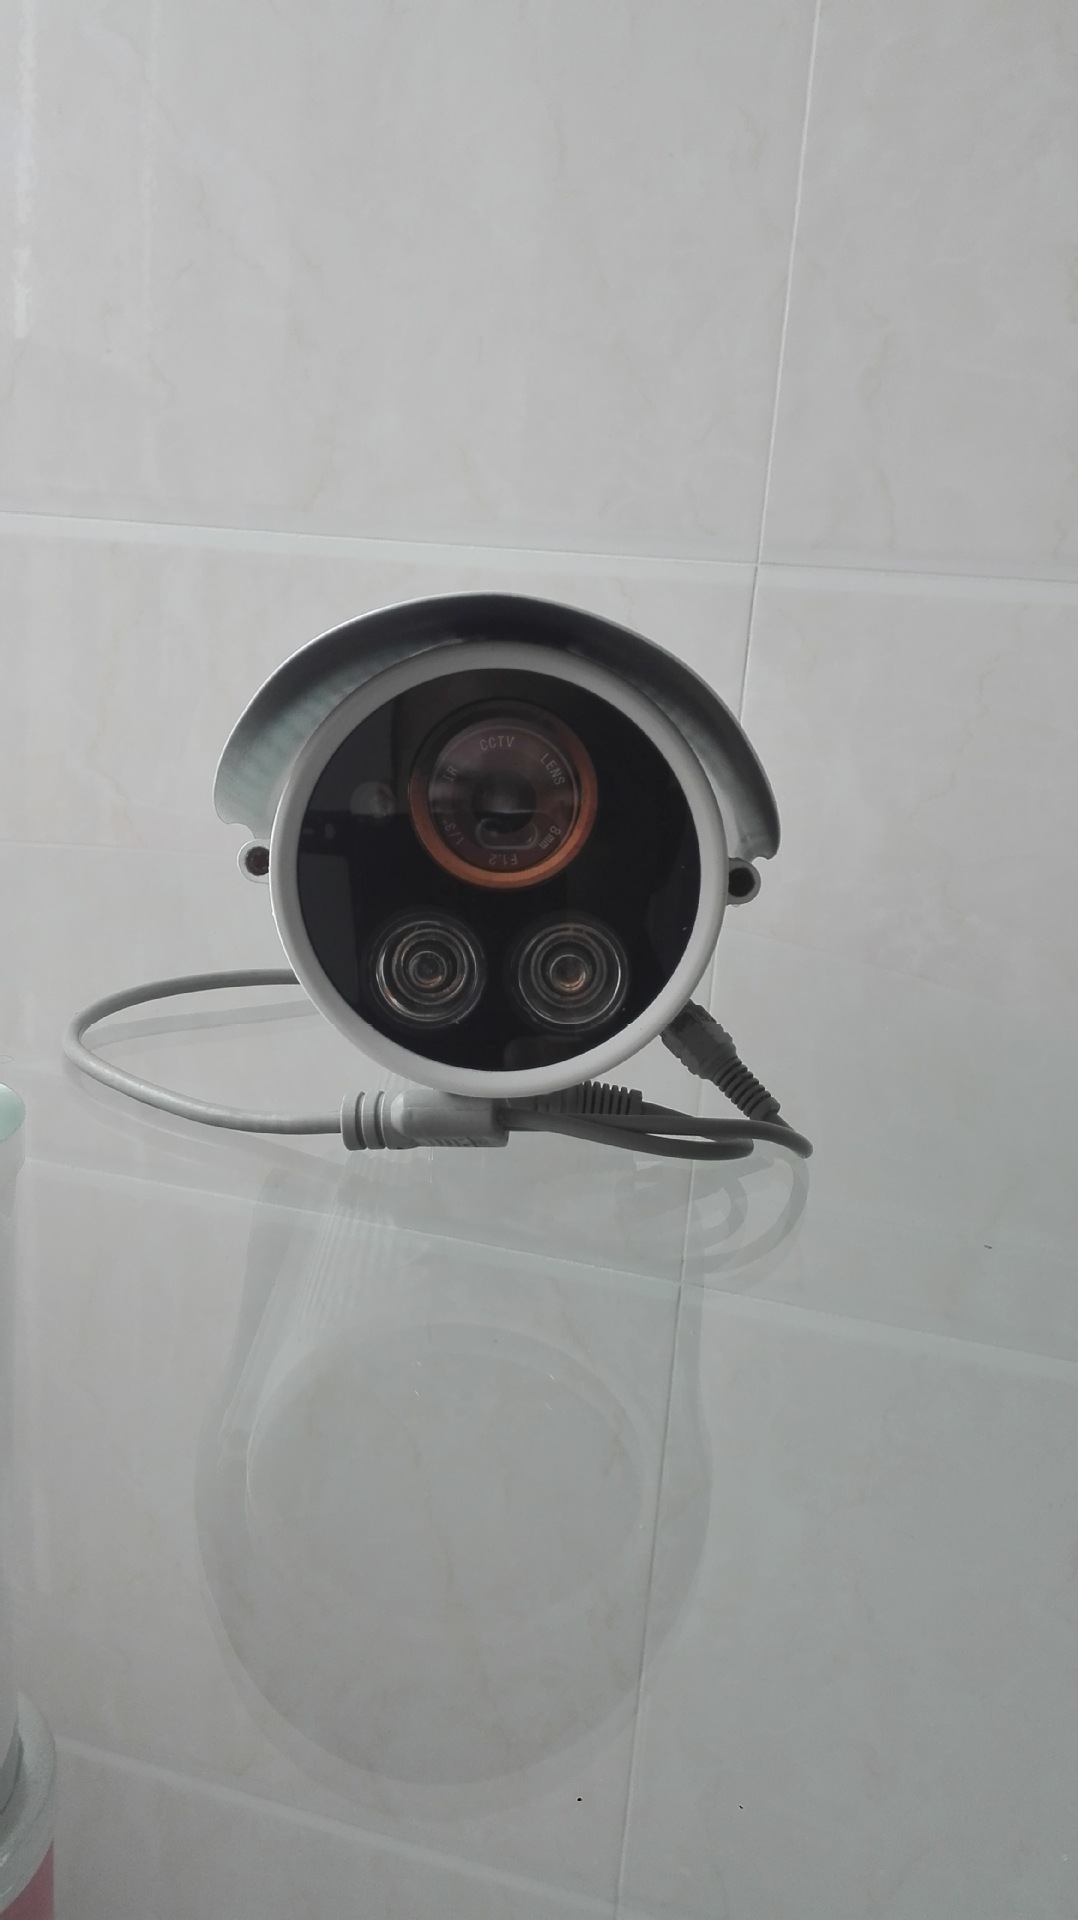 模拟高清监控摄像头工业家用1200线厂家直销红外夜视防水摄像机